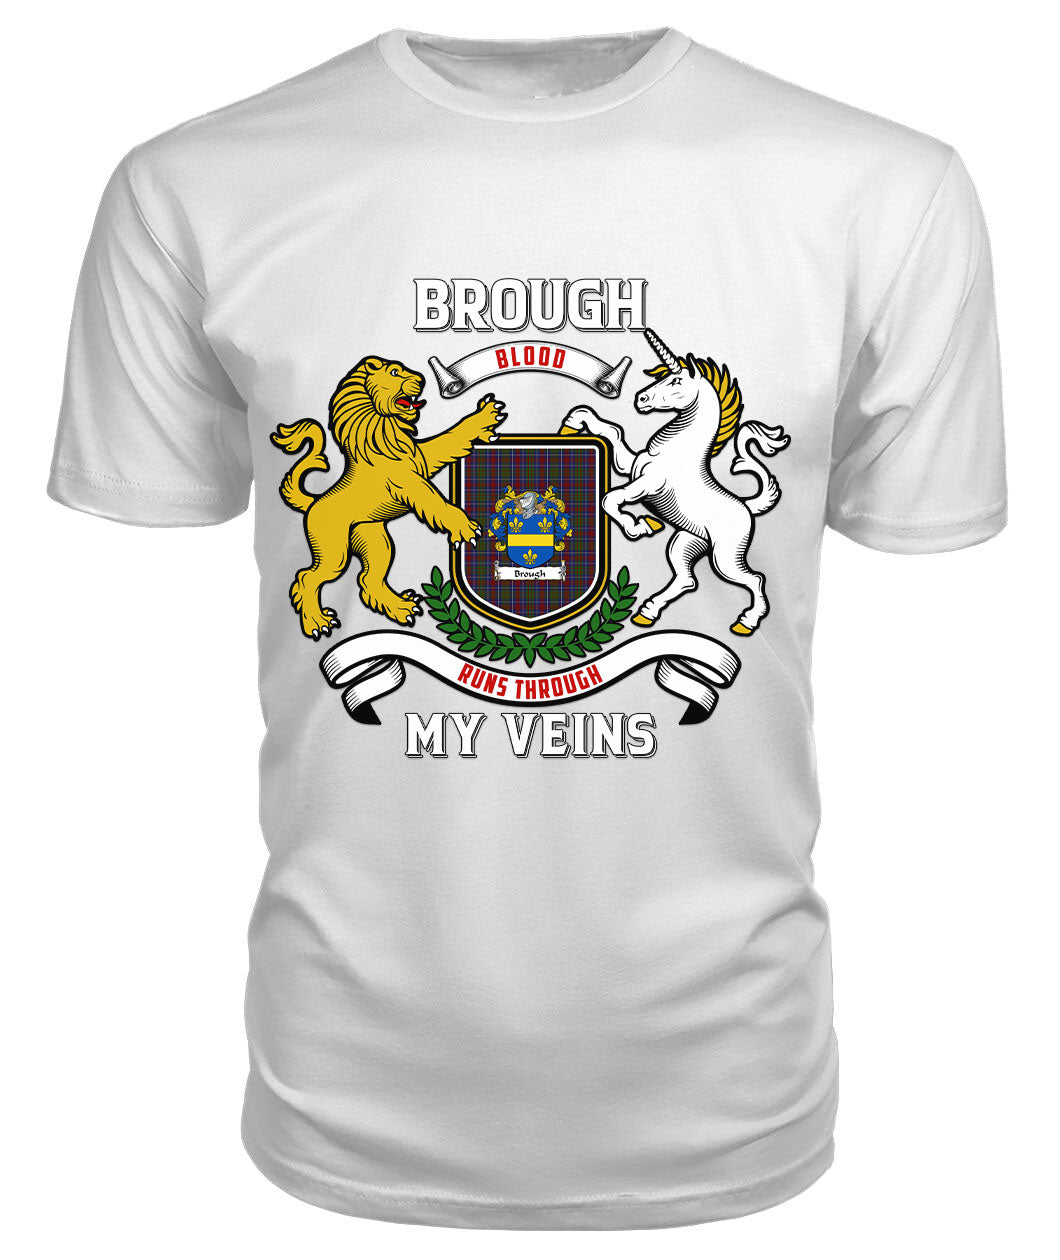 Brough Tartan Crest 2D T-shirt - Blood Runs Through My Veins Style